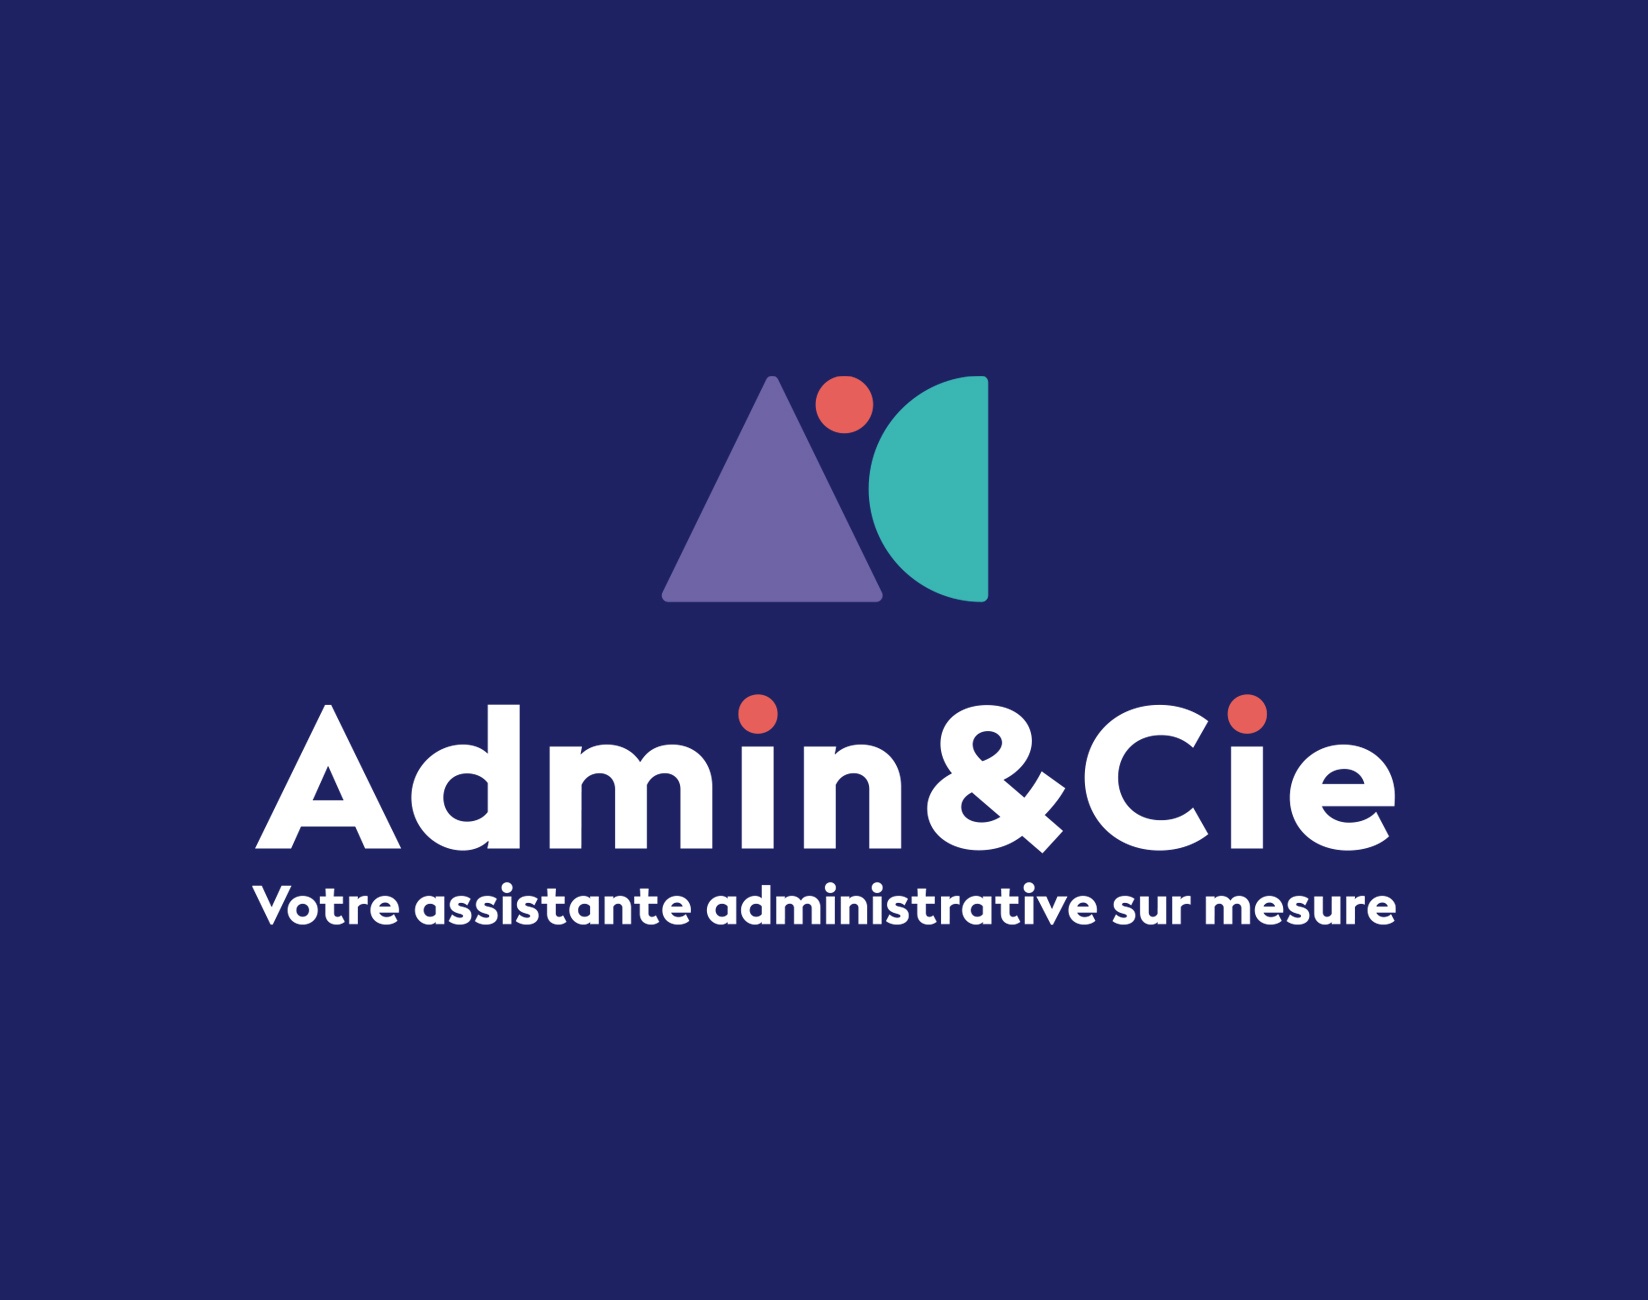 Audrey Lehembre - admin & cie logo